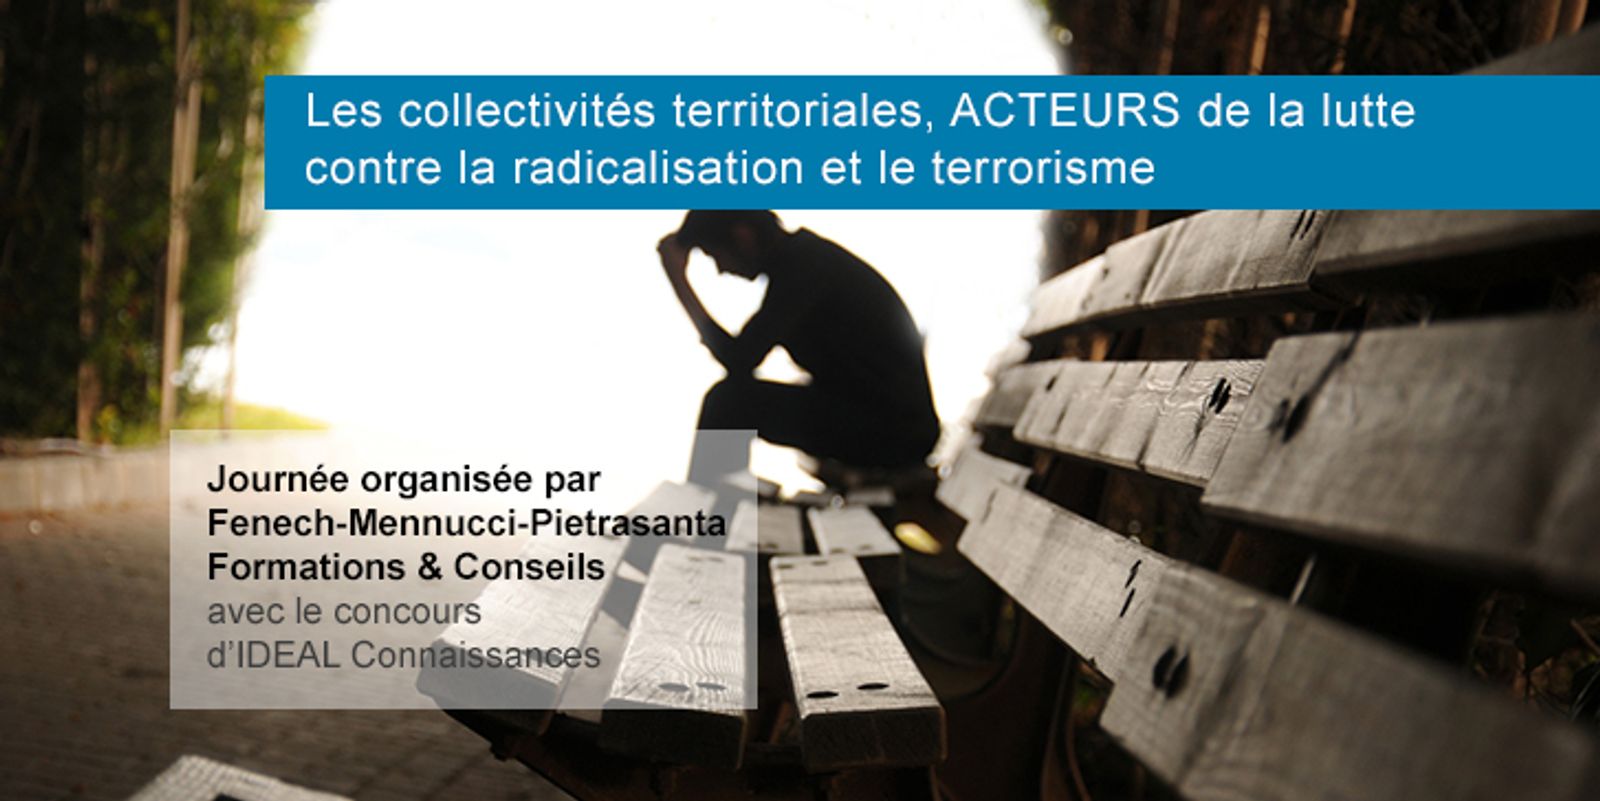 Les collectivités territoriales, acteurs de la lutte contre la radicalisation et le terrorisme